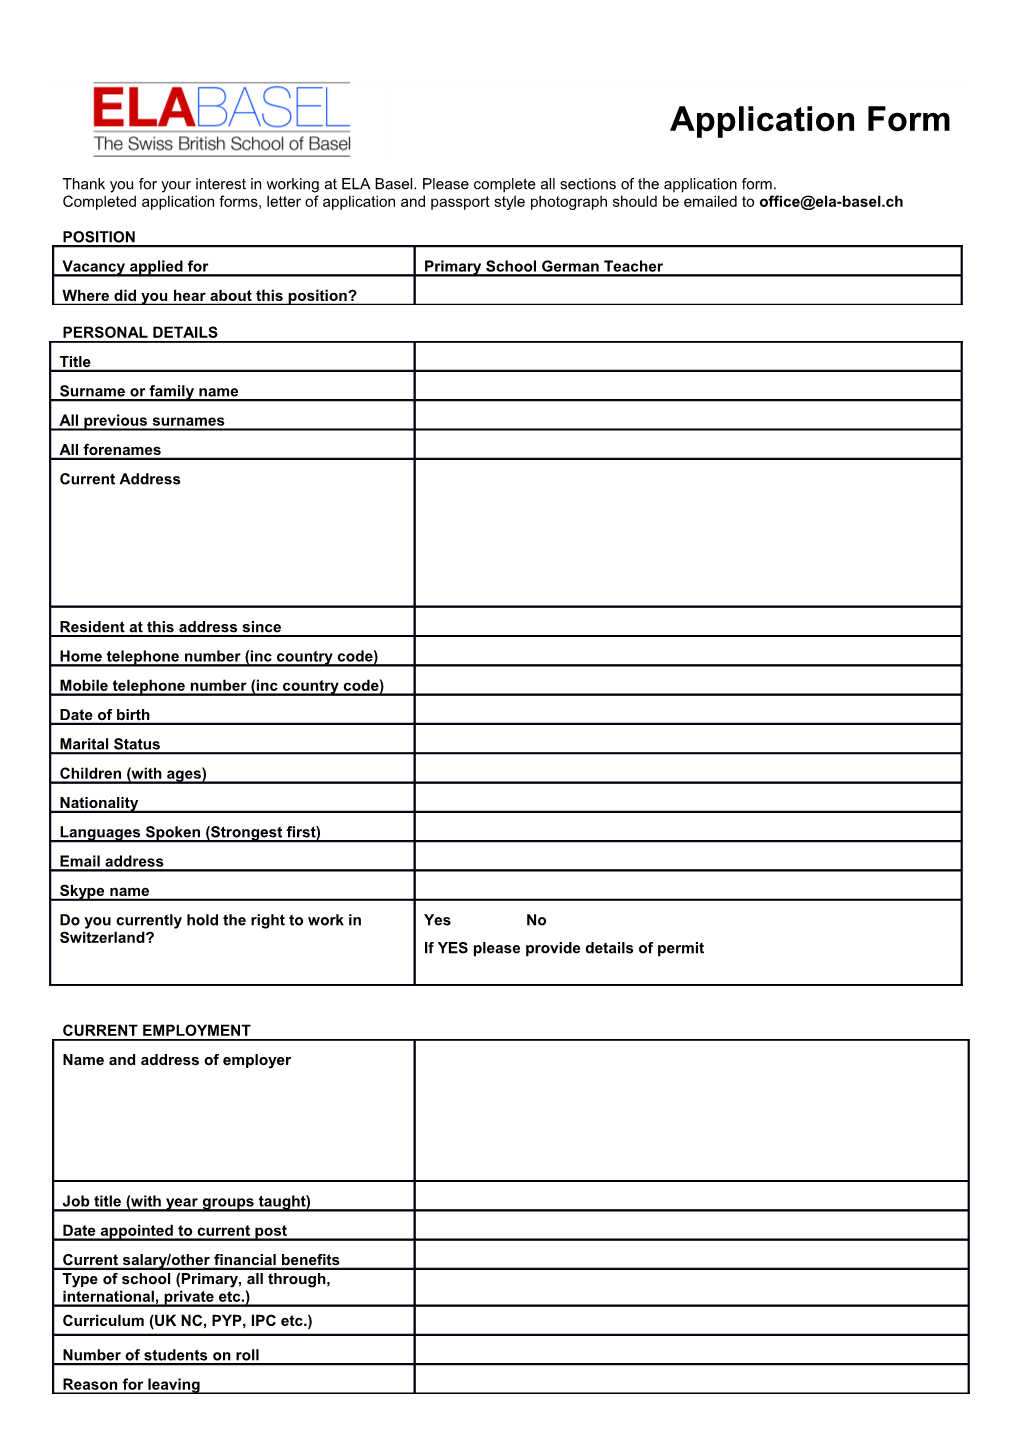 ELA Basel Application Form